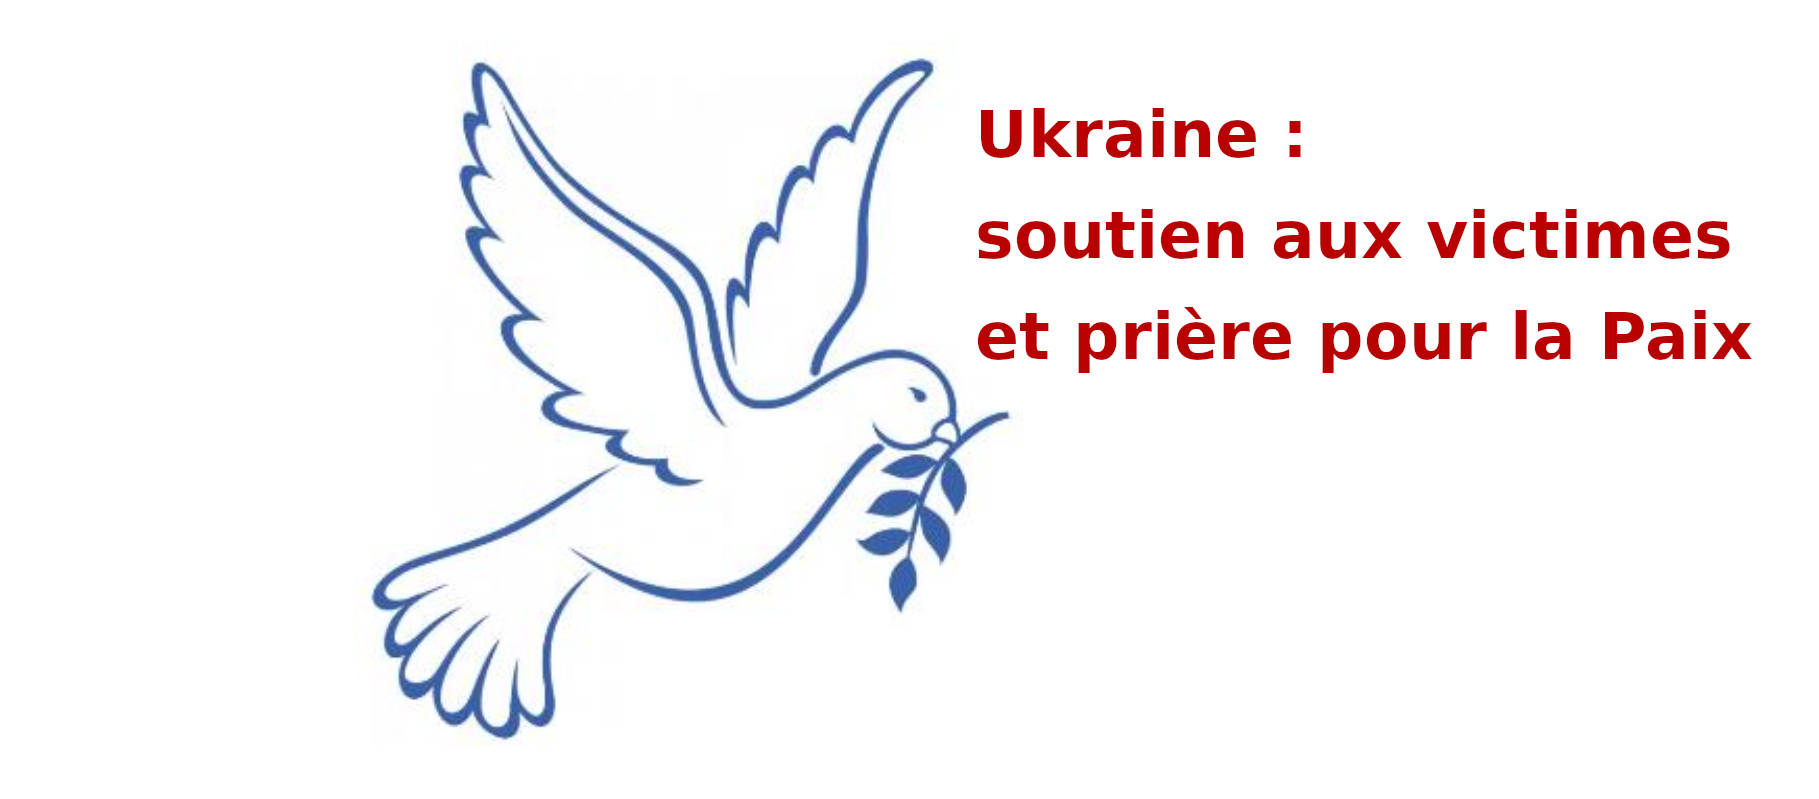 Ukraine : soutien pour les victimes de la guerre et prière pour la Paix